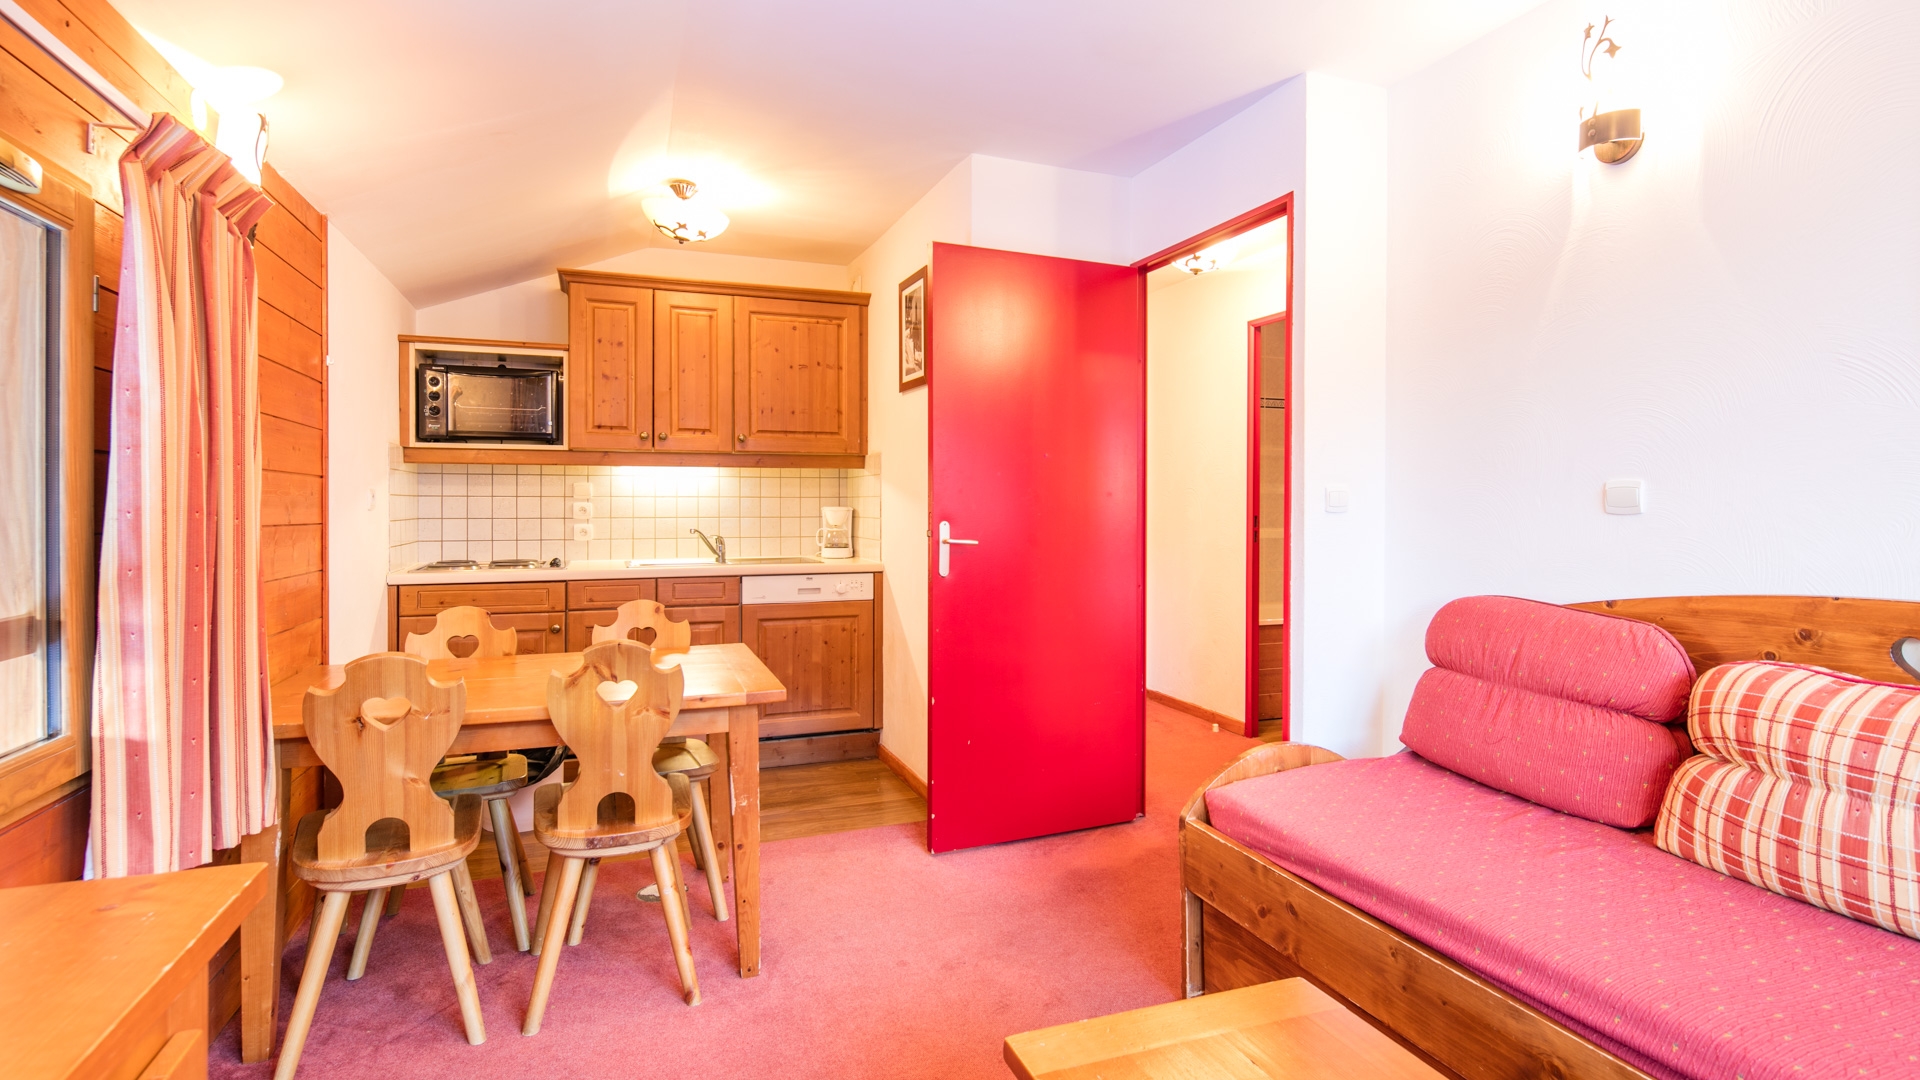 Les Chalets de la Ramoure: Ferienwohnung für 4 Personen - Wohnzimmer (Beispiel)